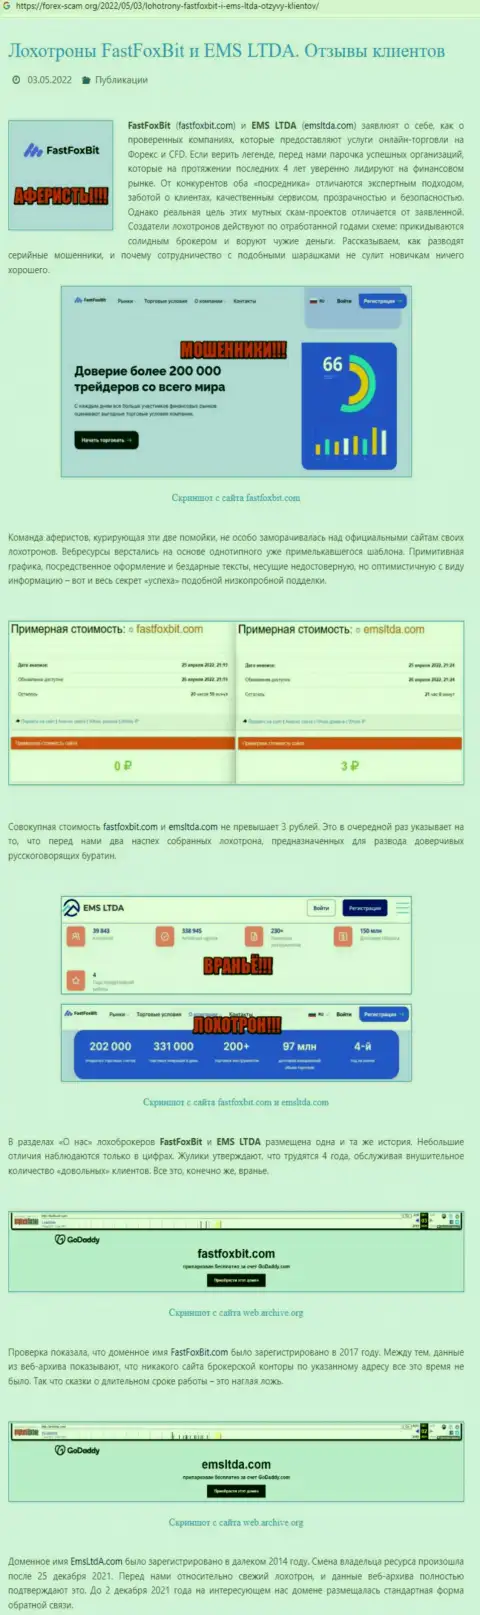 О вложенных в организацию ЕМС ЛТДА финансовых средствах можете забыть, воруют все до последнего рубля (обзор)